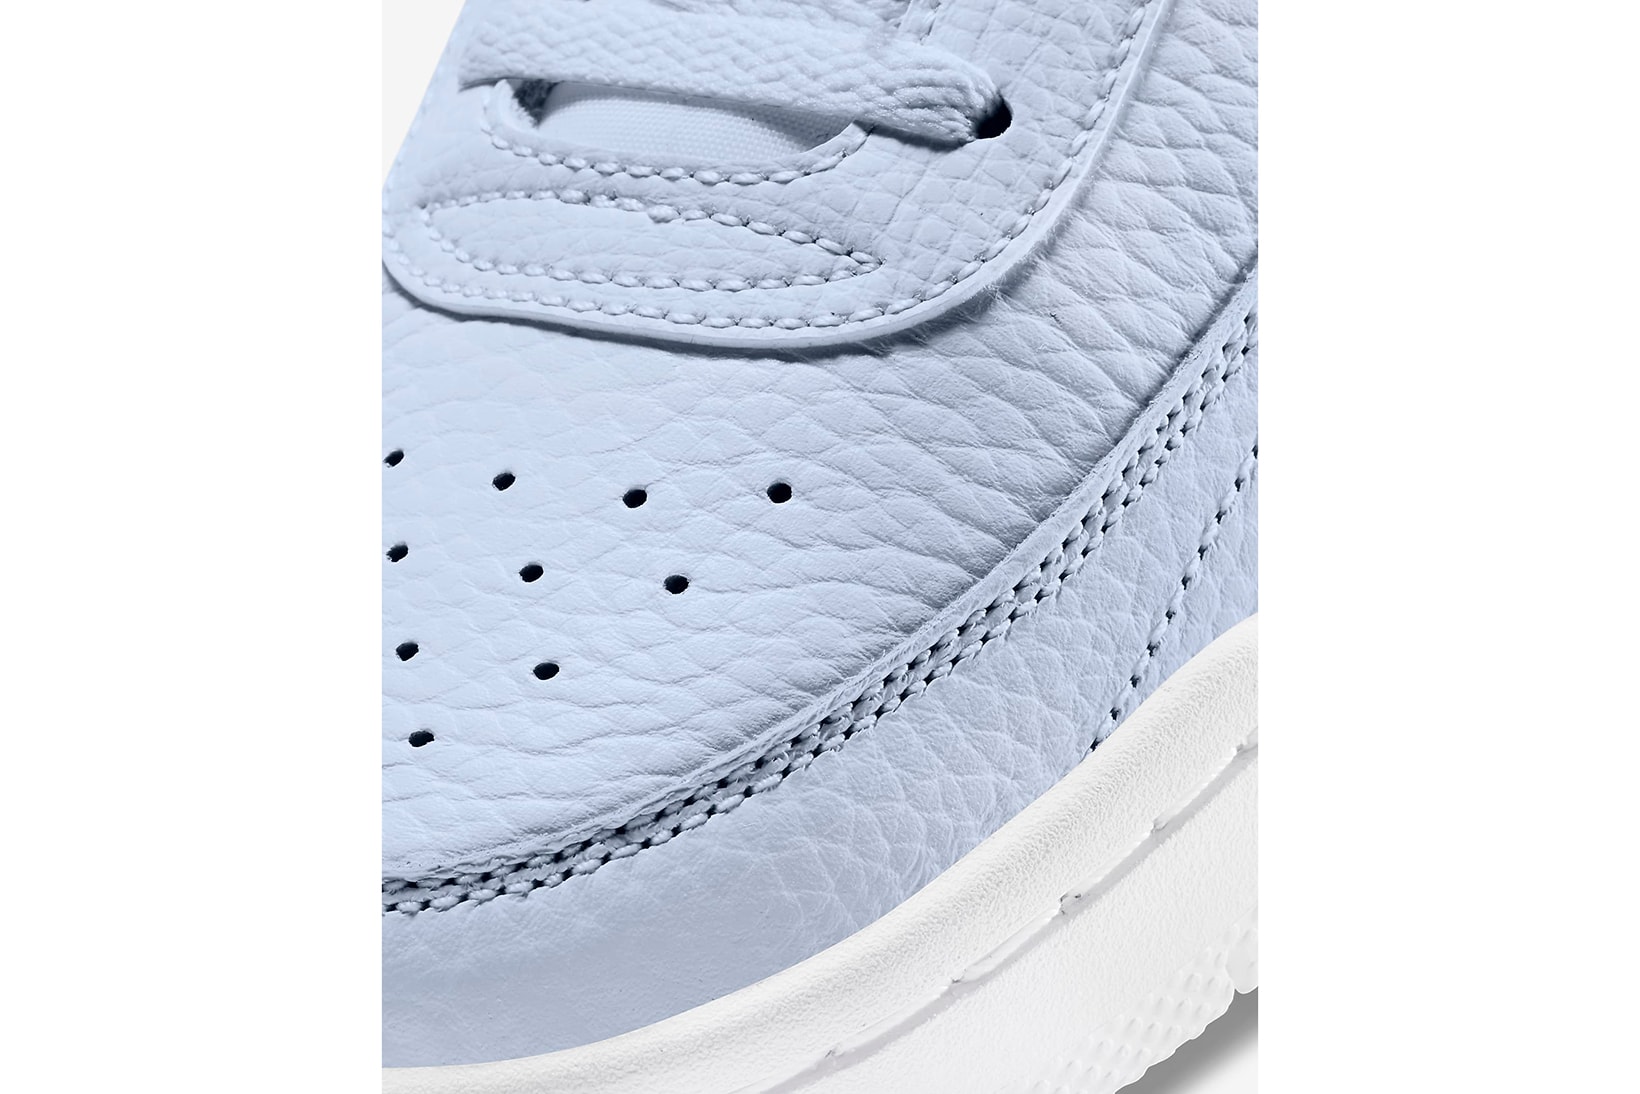 nike court vintage premium womens sneakers pastel blue white colorway shoes footwear sneakerhead